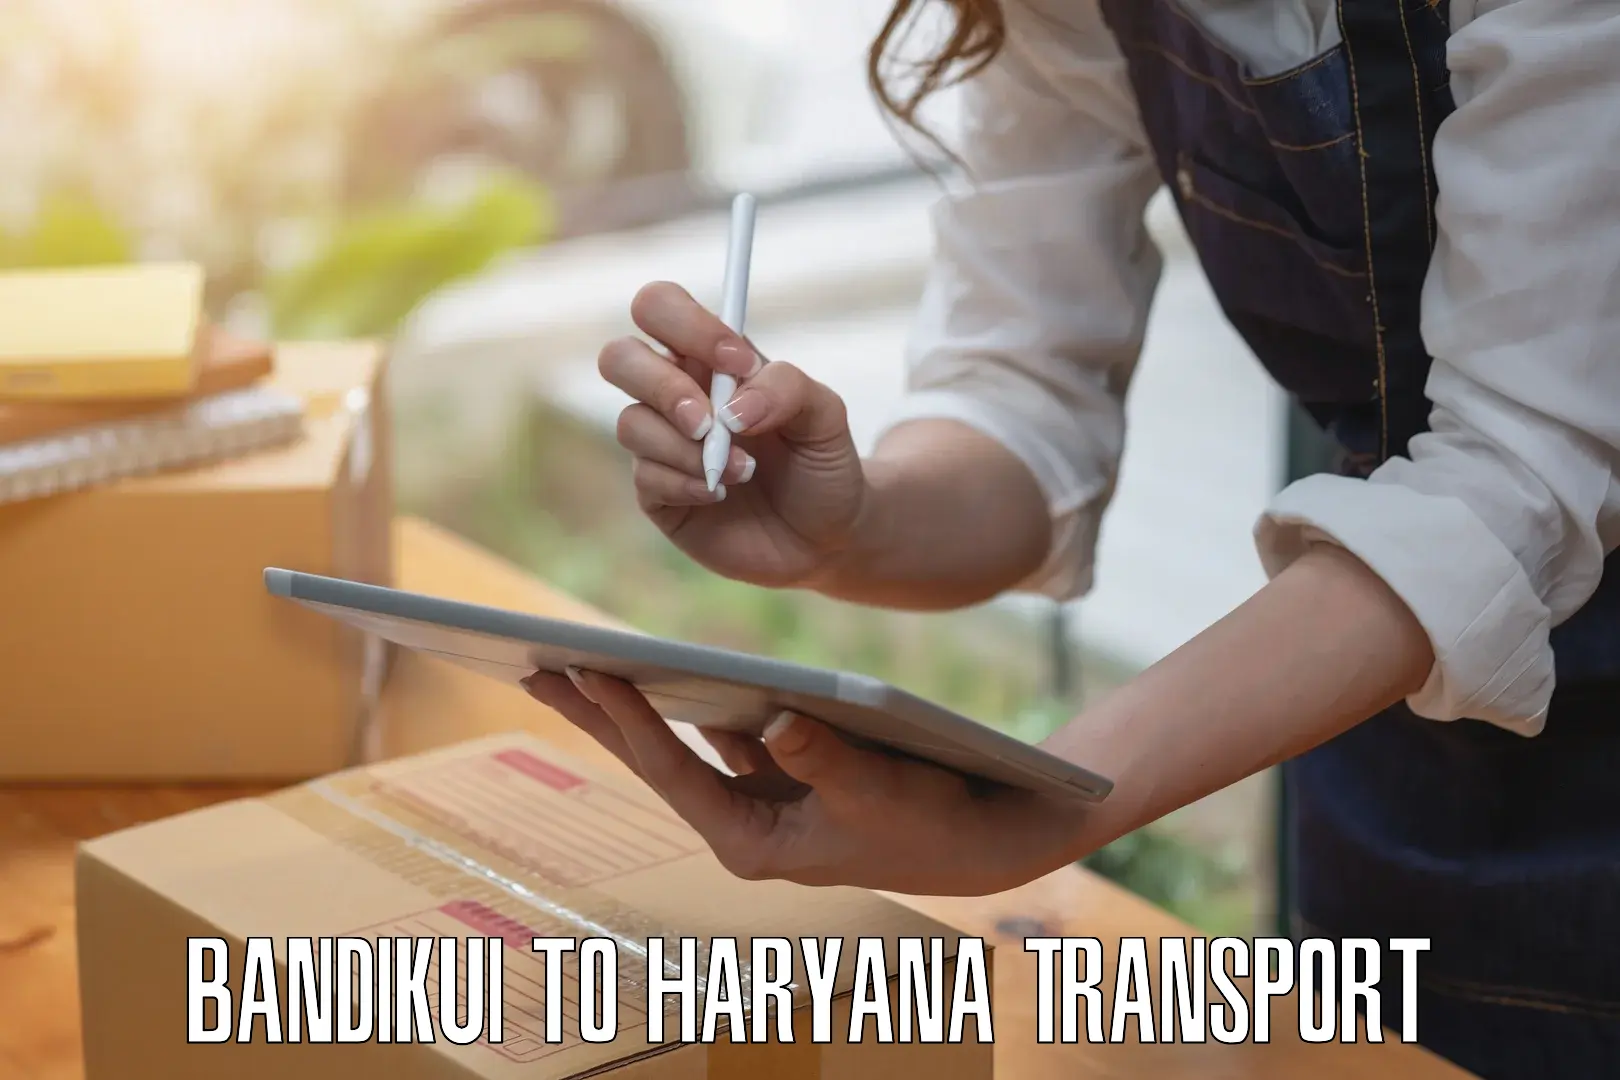 Transport in sharing Bandikui to Bhiwani